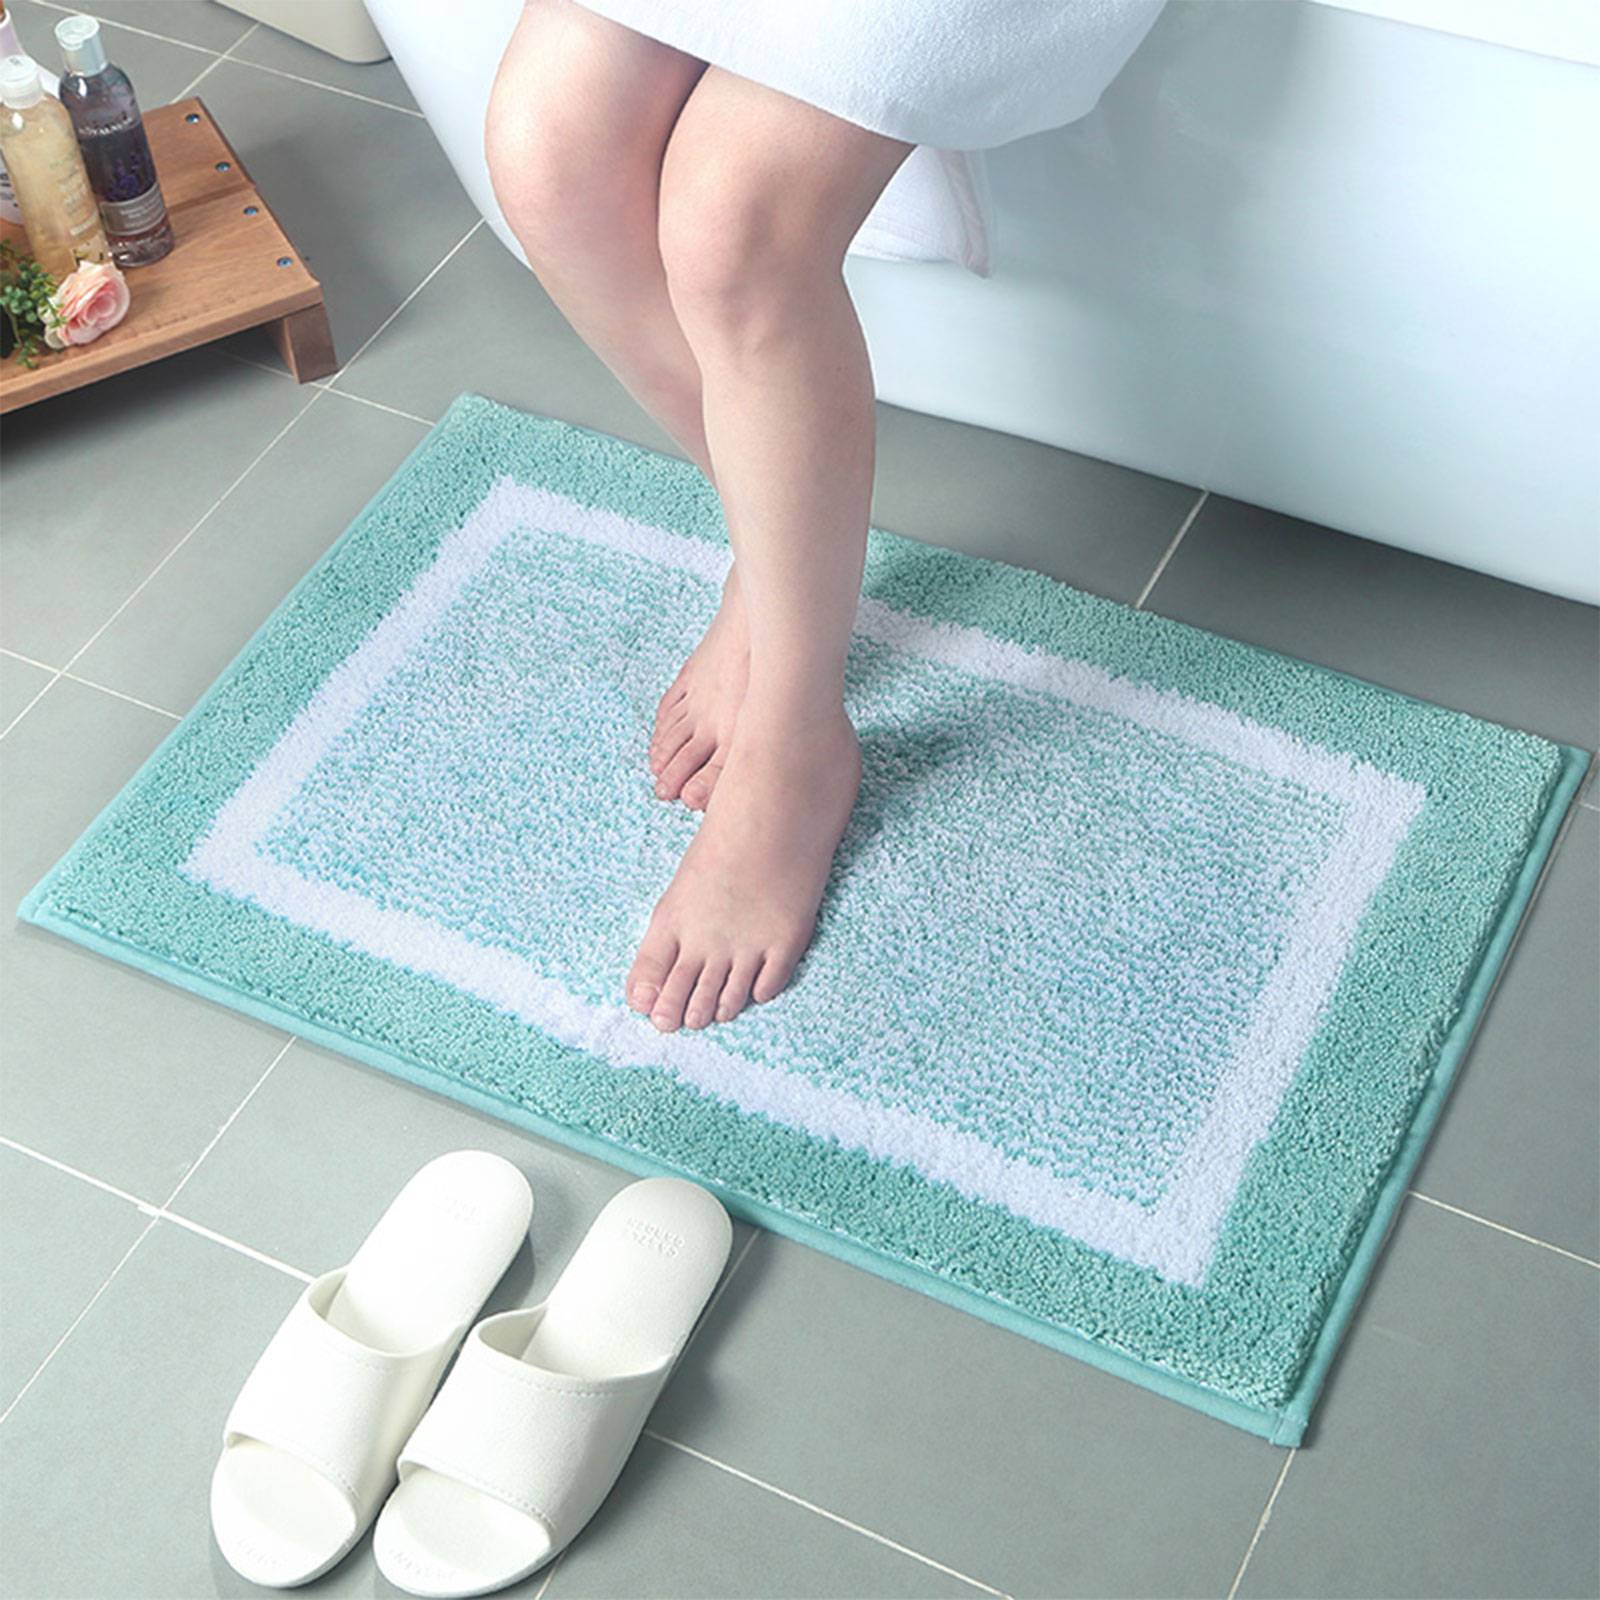 А ты знаешь, как выбрать лучший коврик для ванной?